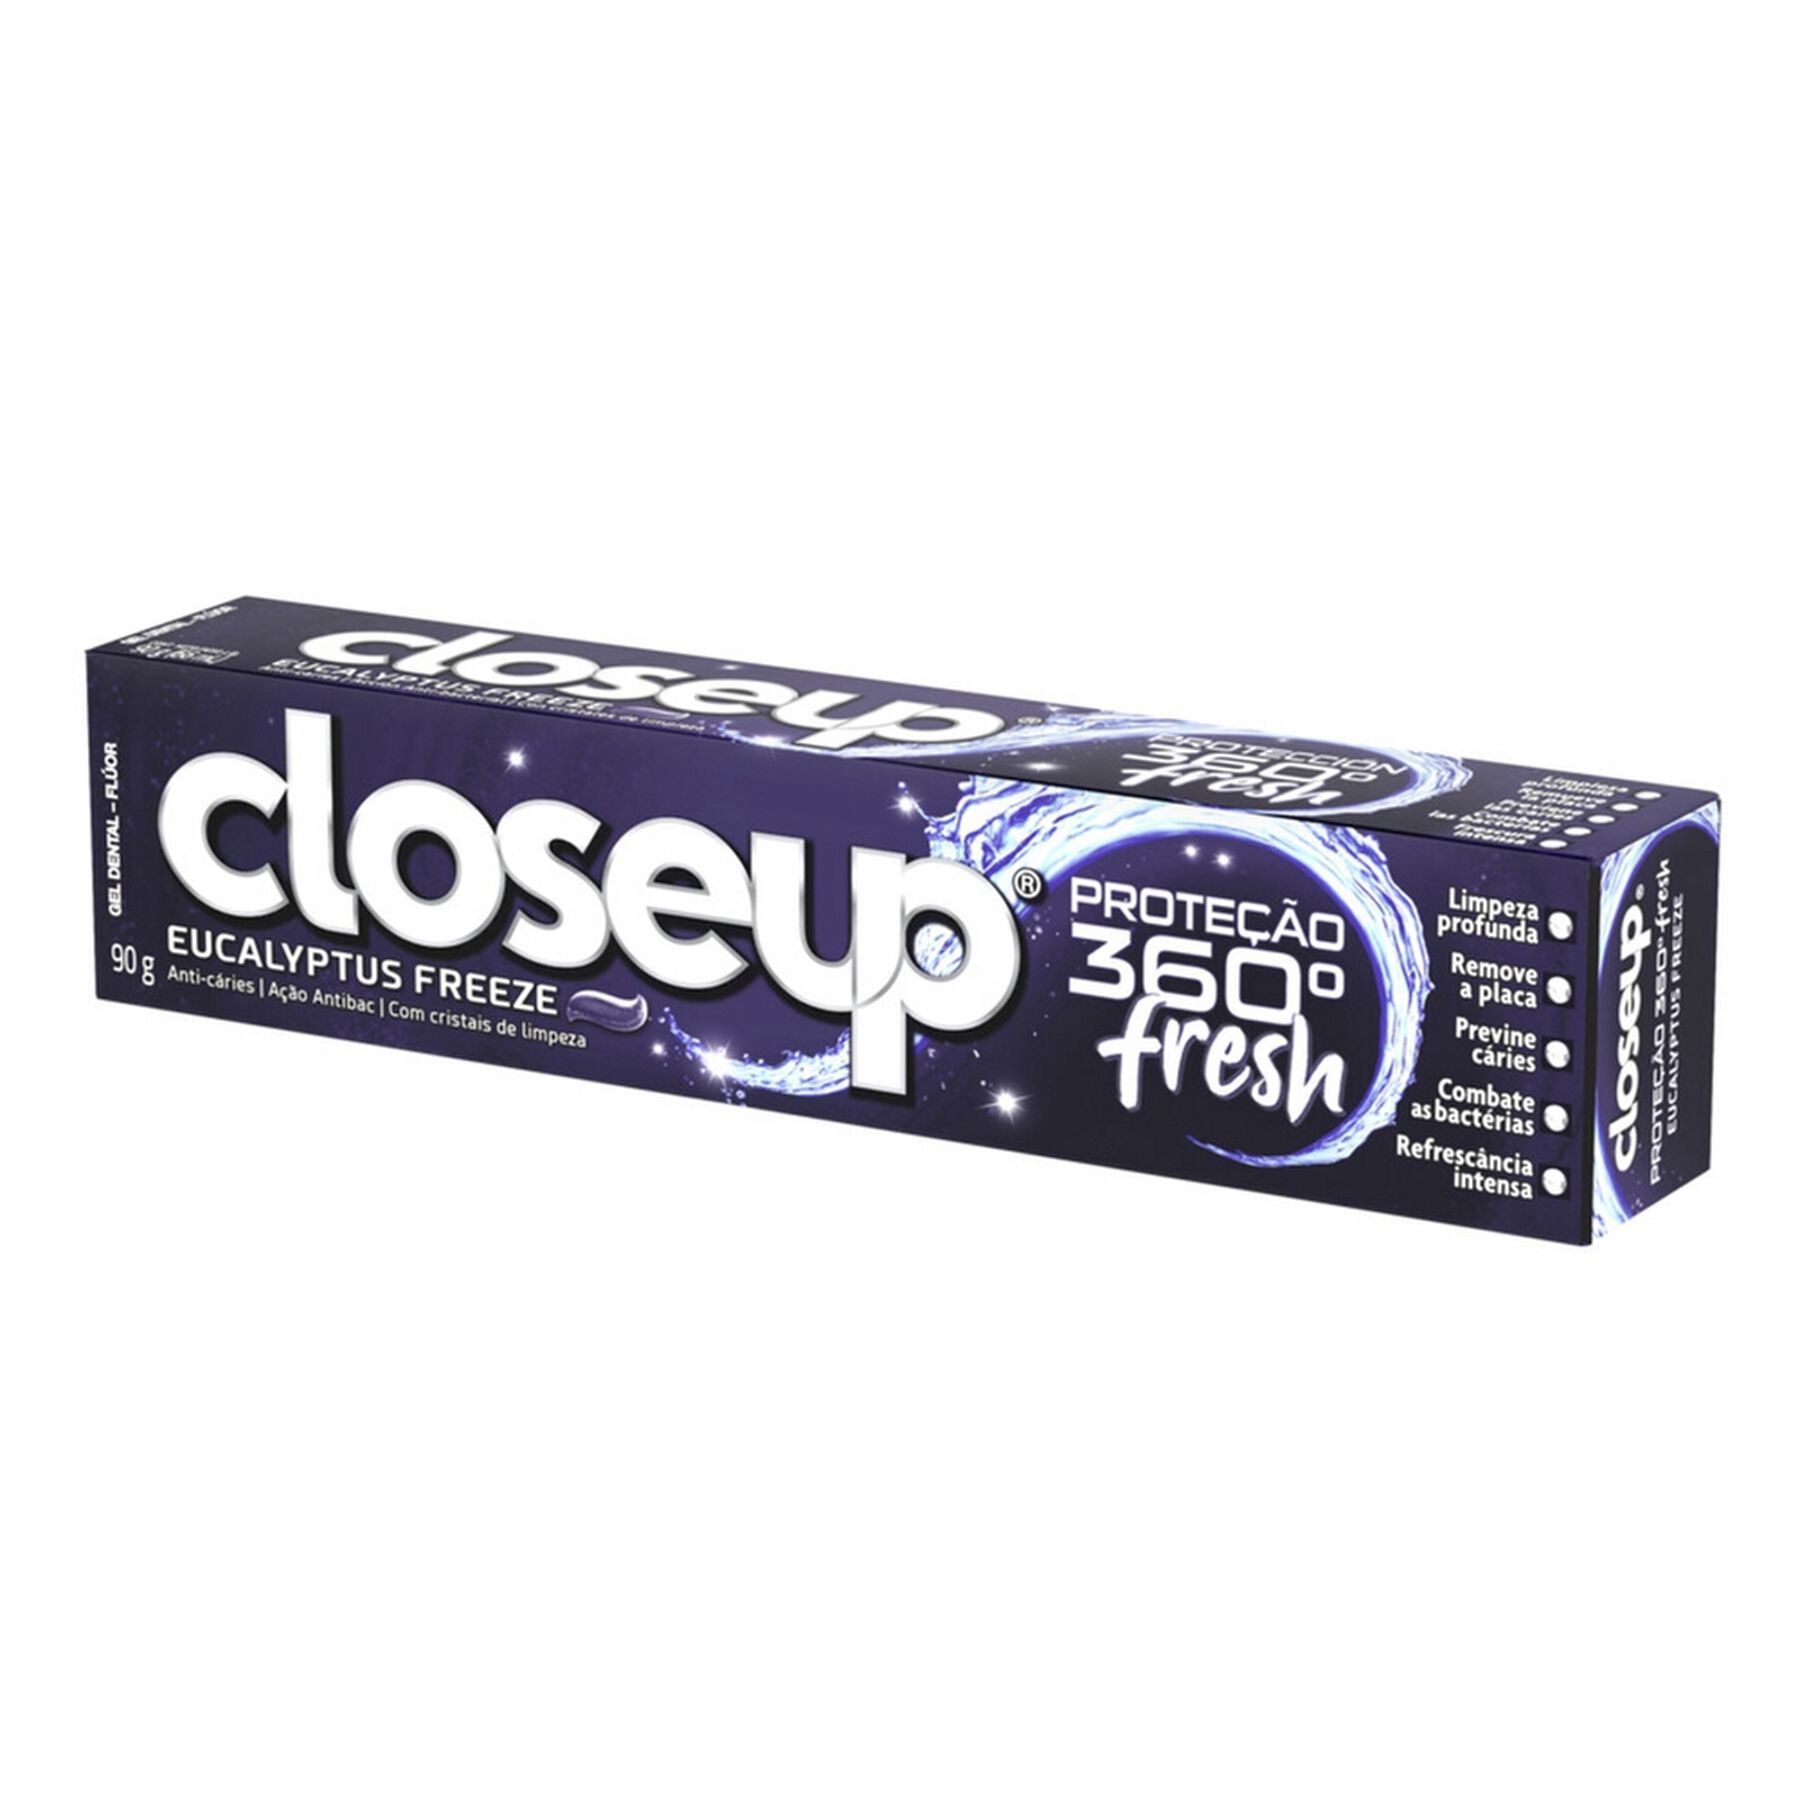 Gel Dental Eucalyptus Freeze Closeup Proteção 360° Fresh Caixa 90g